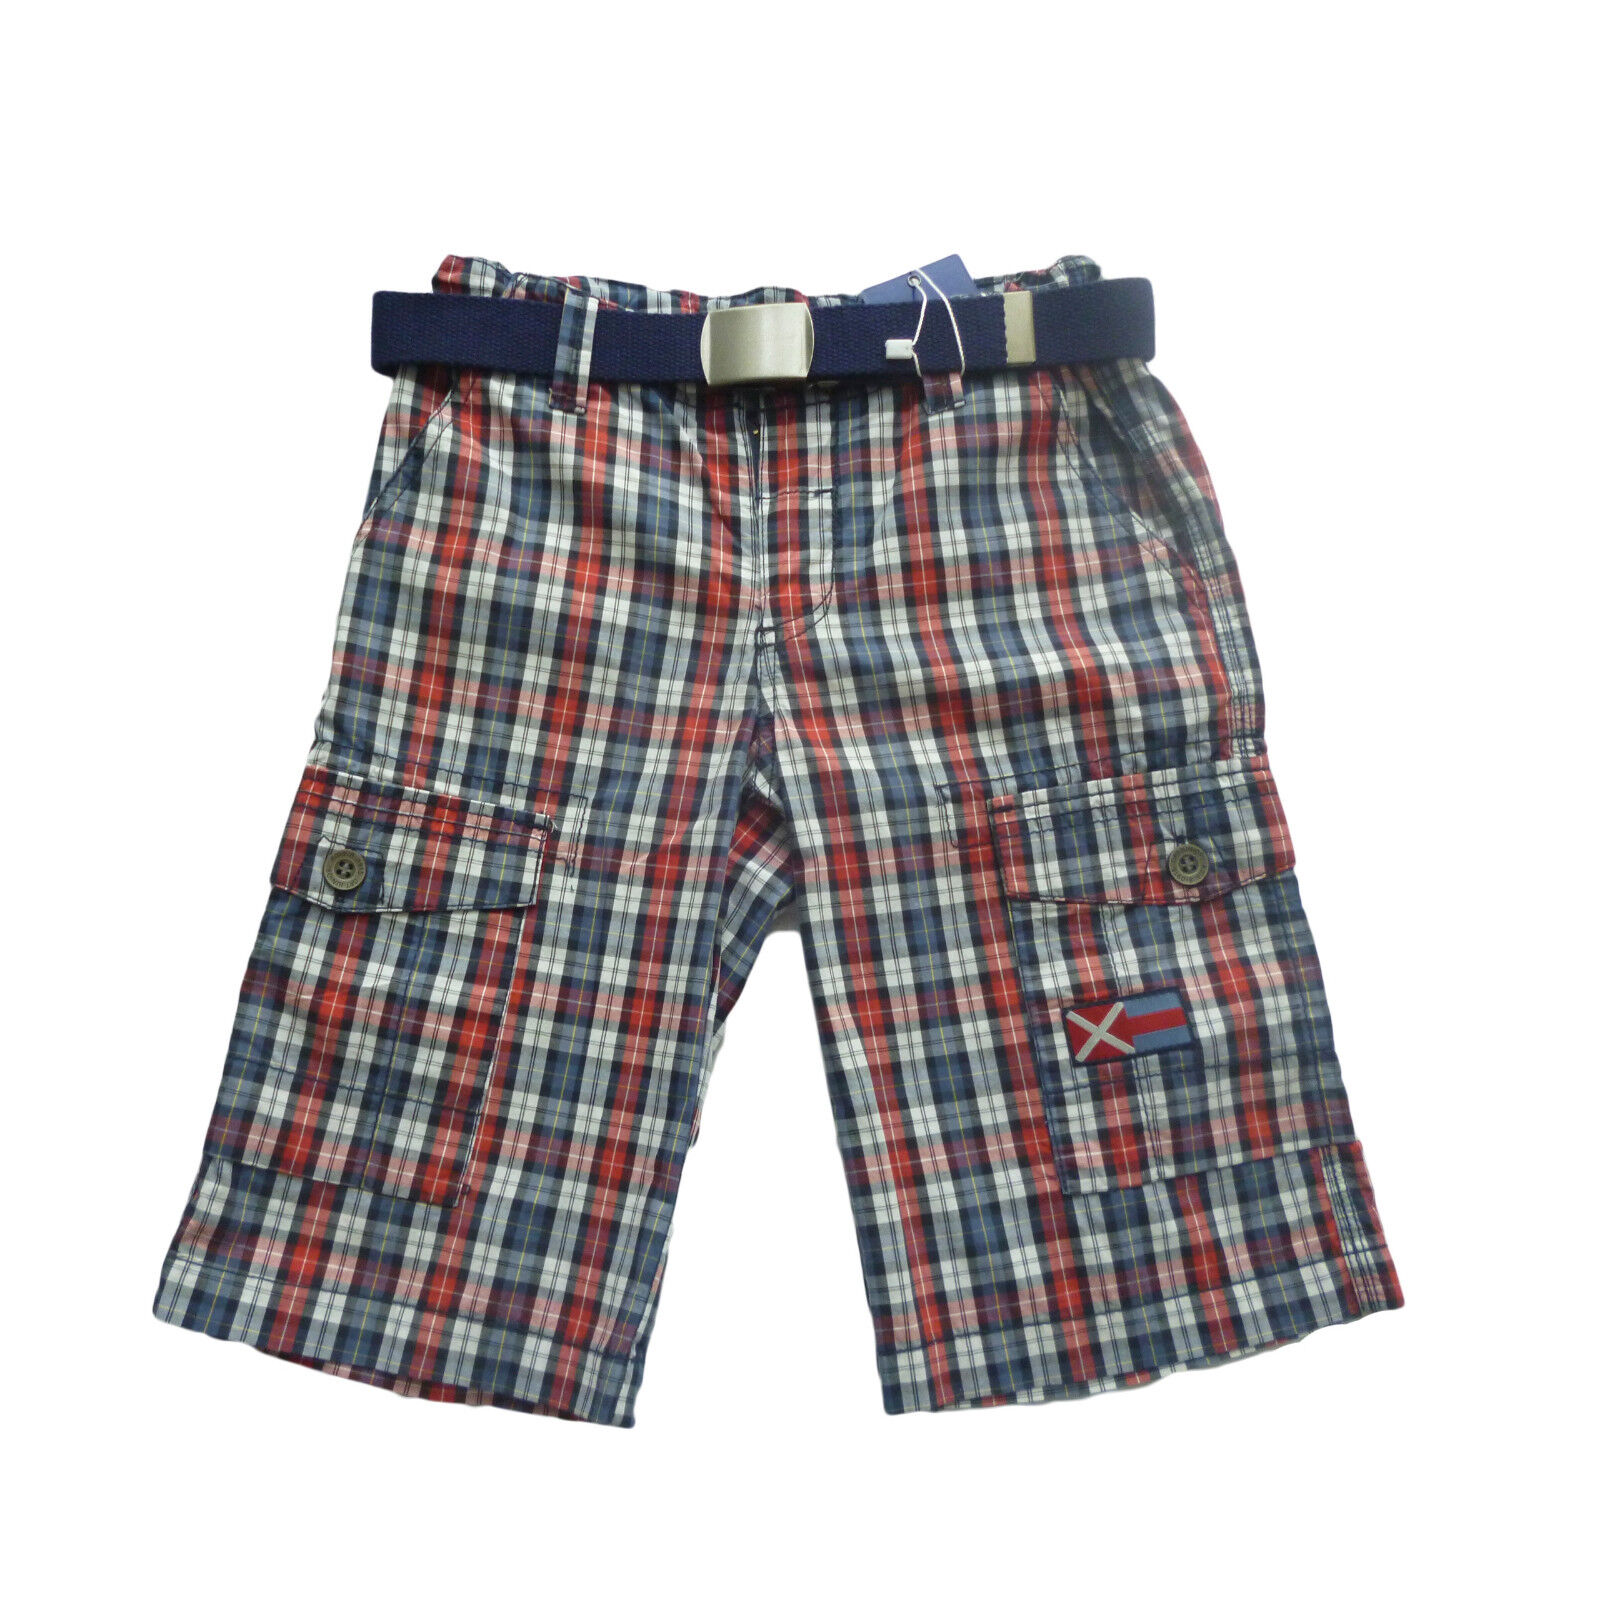 Pantalones cortos niño , shorts de Losan , rojo ,talla 8 años...